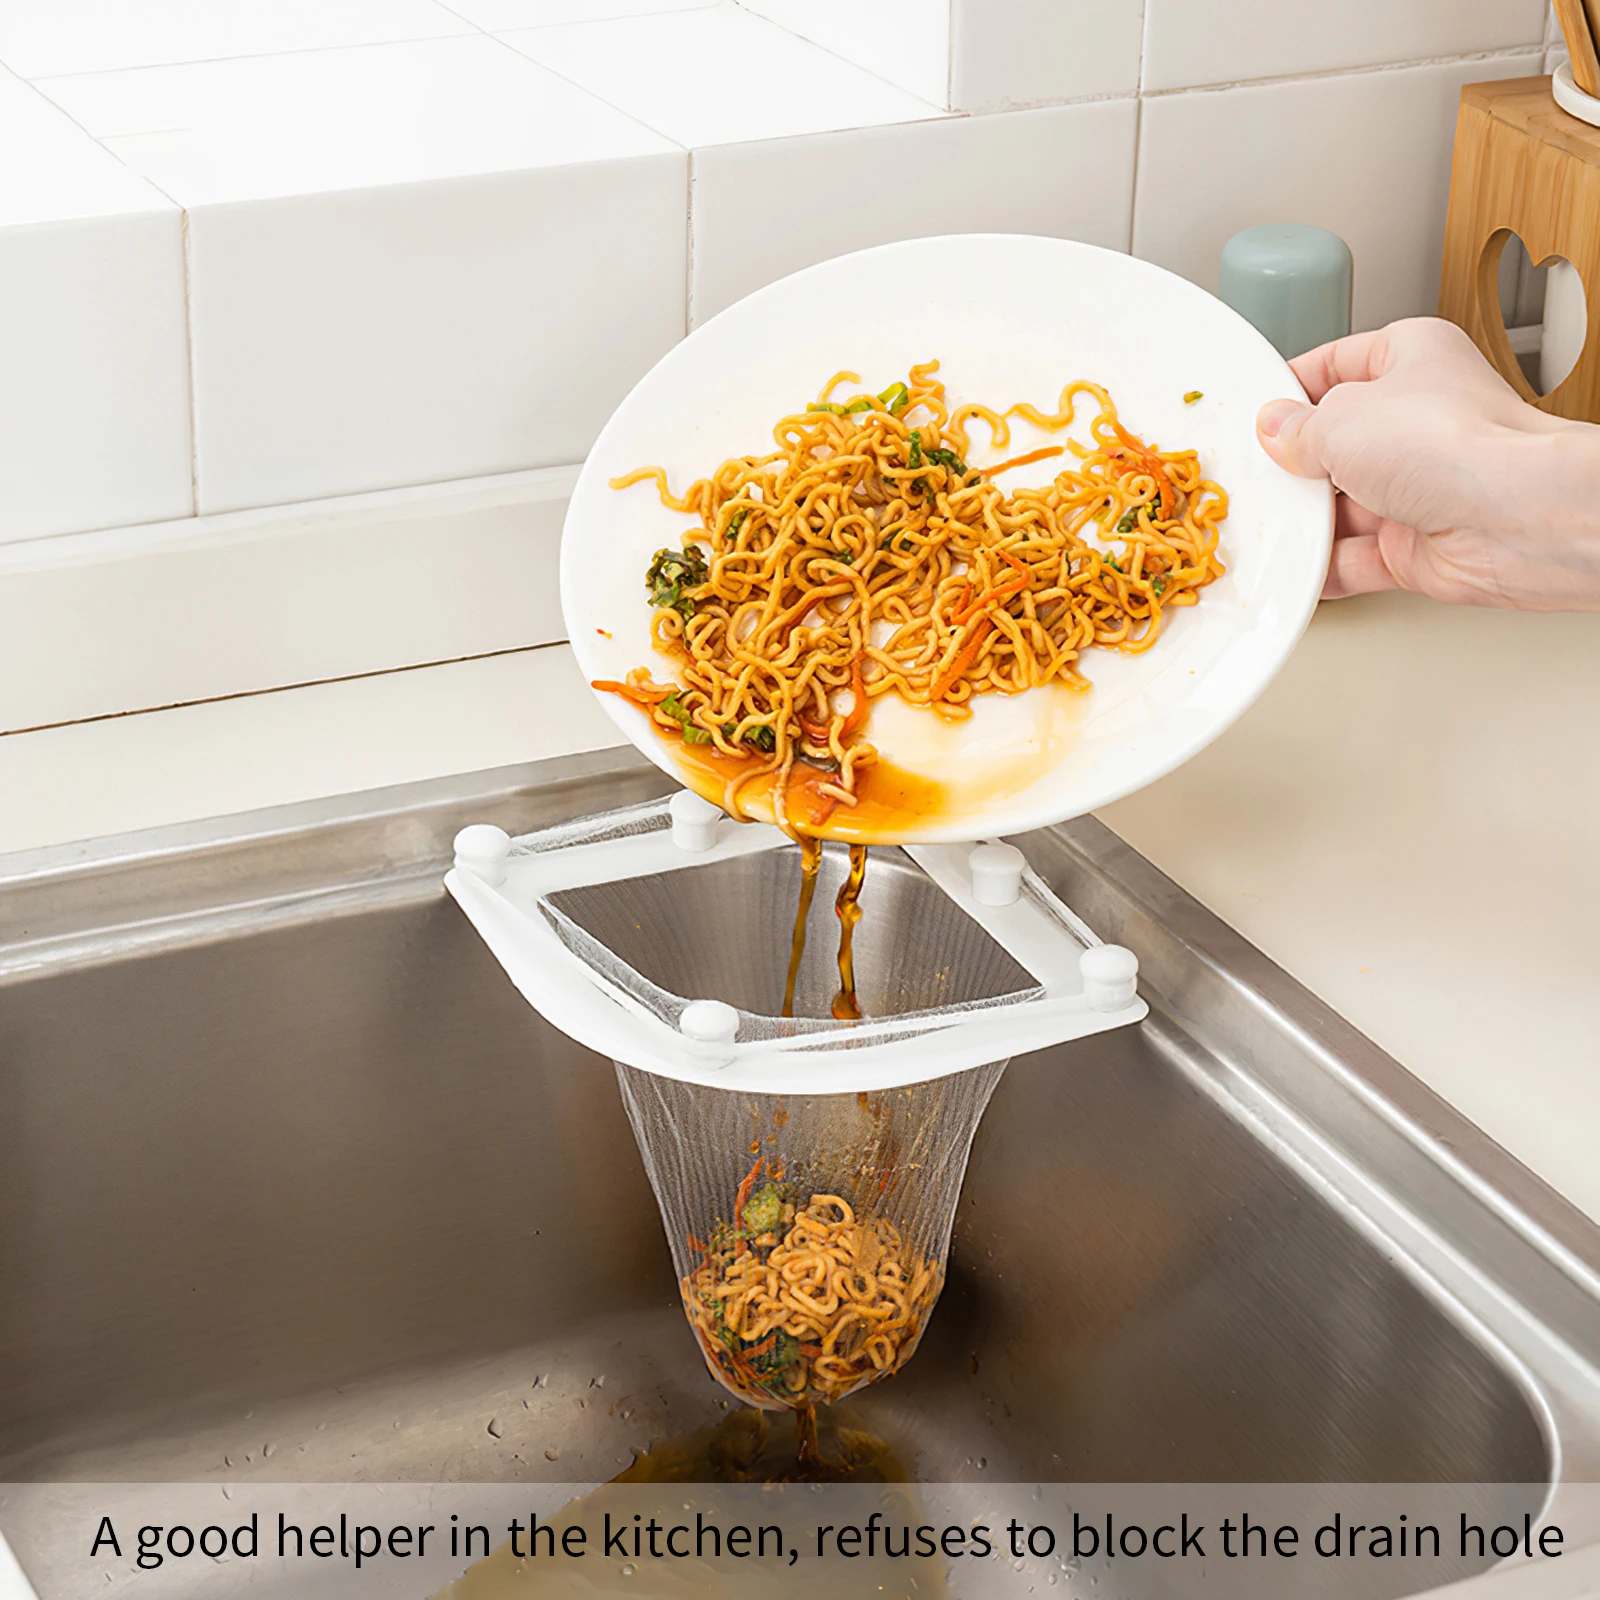 

Sink Strainer Basket Corner Sink Filter Drain Net Bag Kitchen Garbage Storage Rack For Food Waste Mesh Leftover With Suction Cup